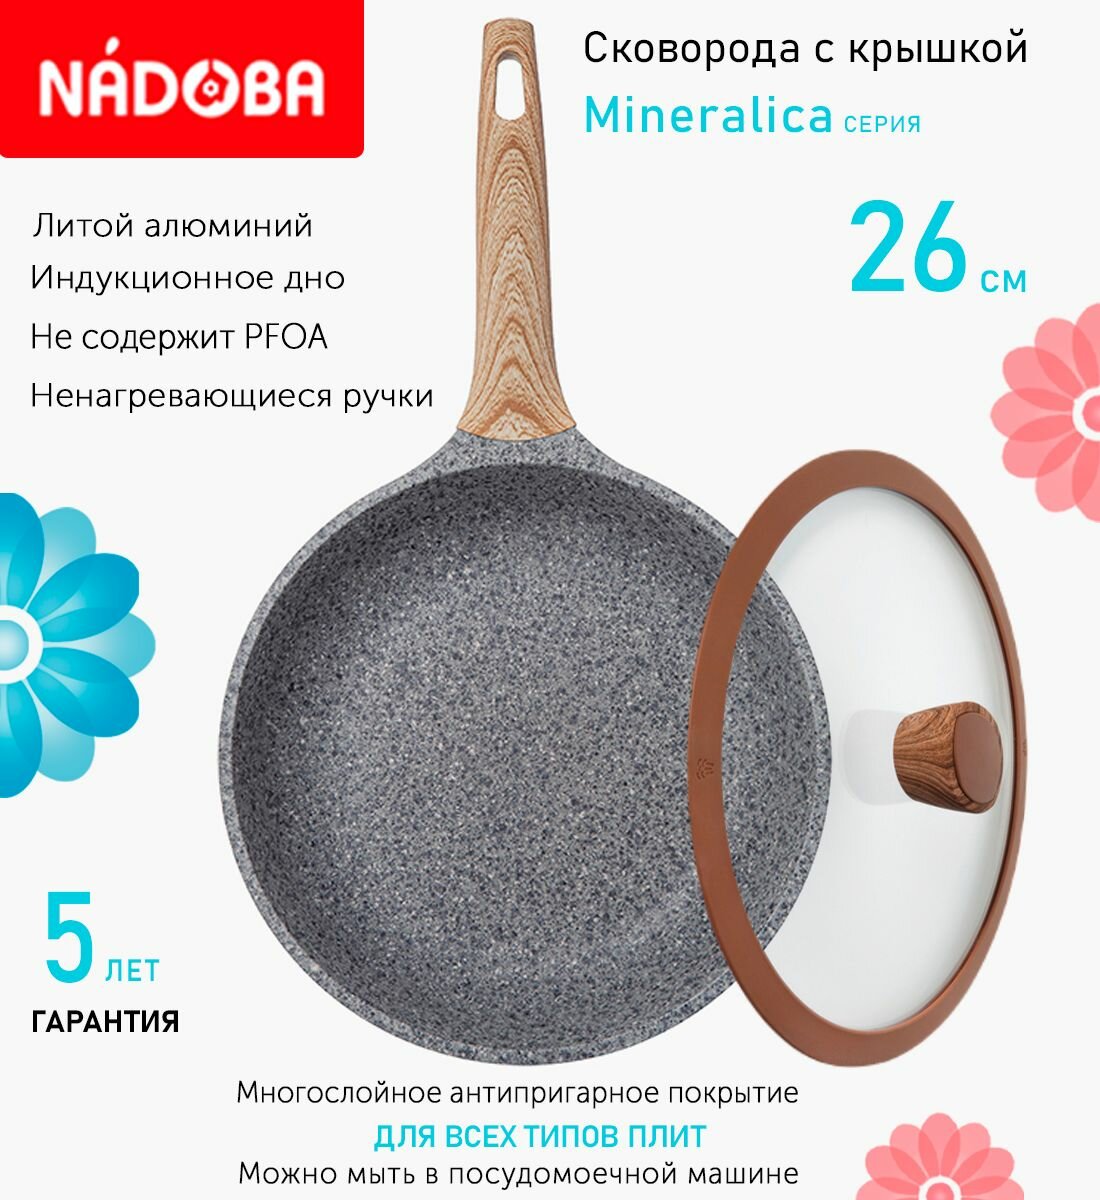 Сковорода с крышкой NADOBA 26см, серия "Mineralica" (арт. 728417/751312)